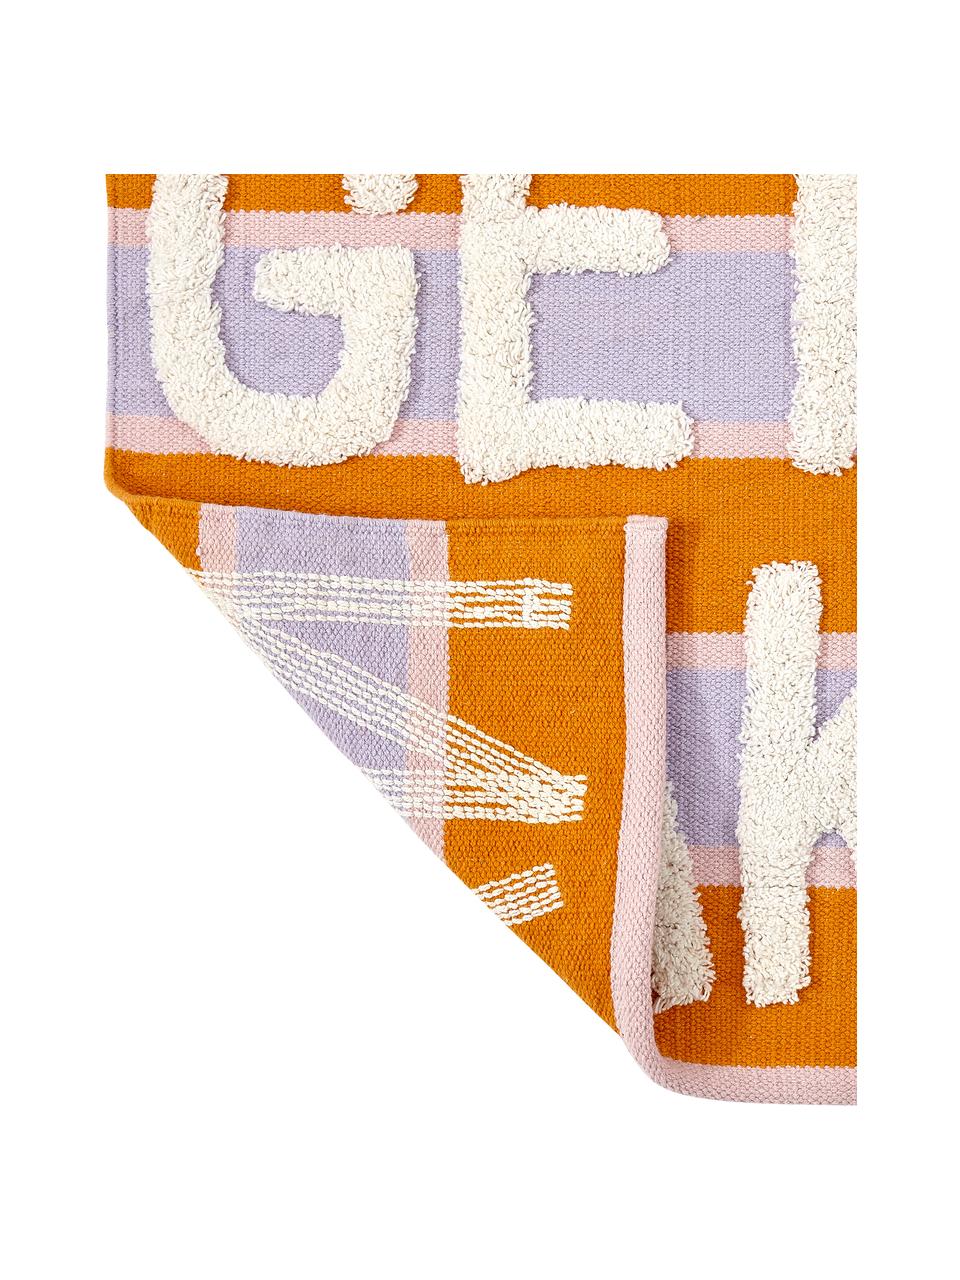 Badmat Get Naked met hoog-laag structuur, 100% katoen, Lila, oranje, lichtbeige, B 55 x L 80 cm